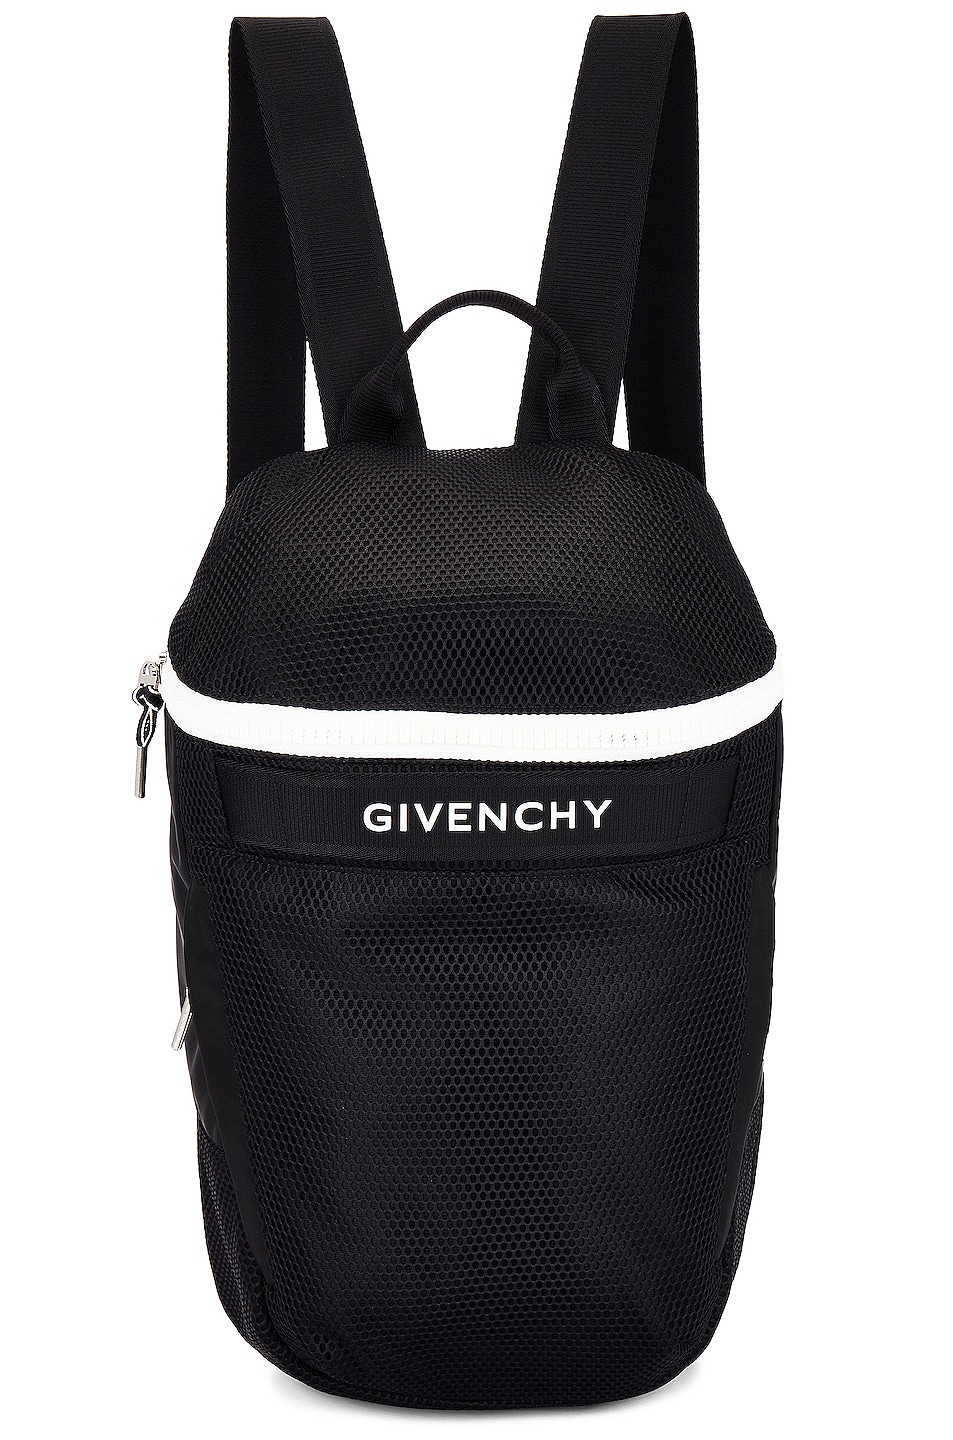 Givenchy G-trek Backpack in Black